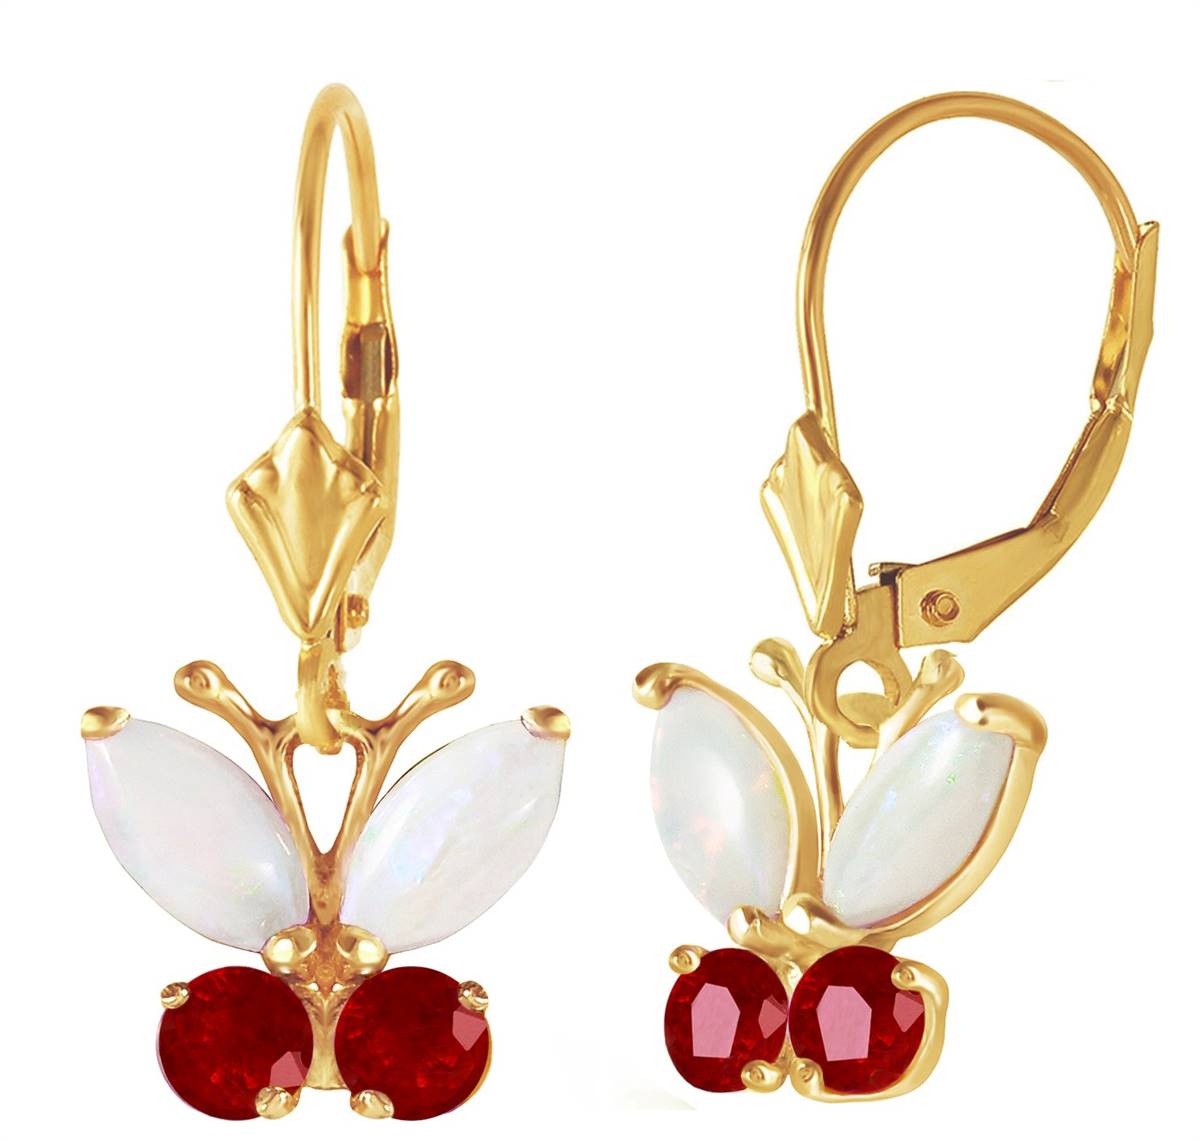 1.39 Carat 14K Solid Yellow Gold Butterfly Earrings Opal Ruby